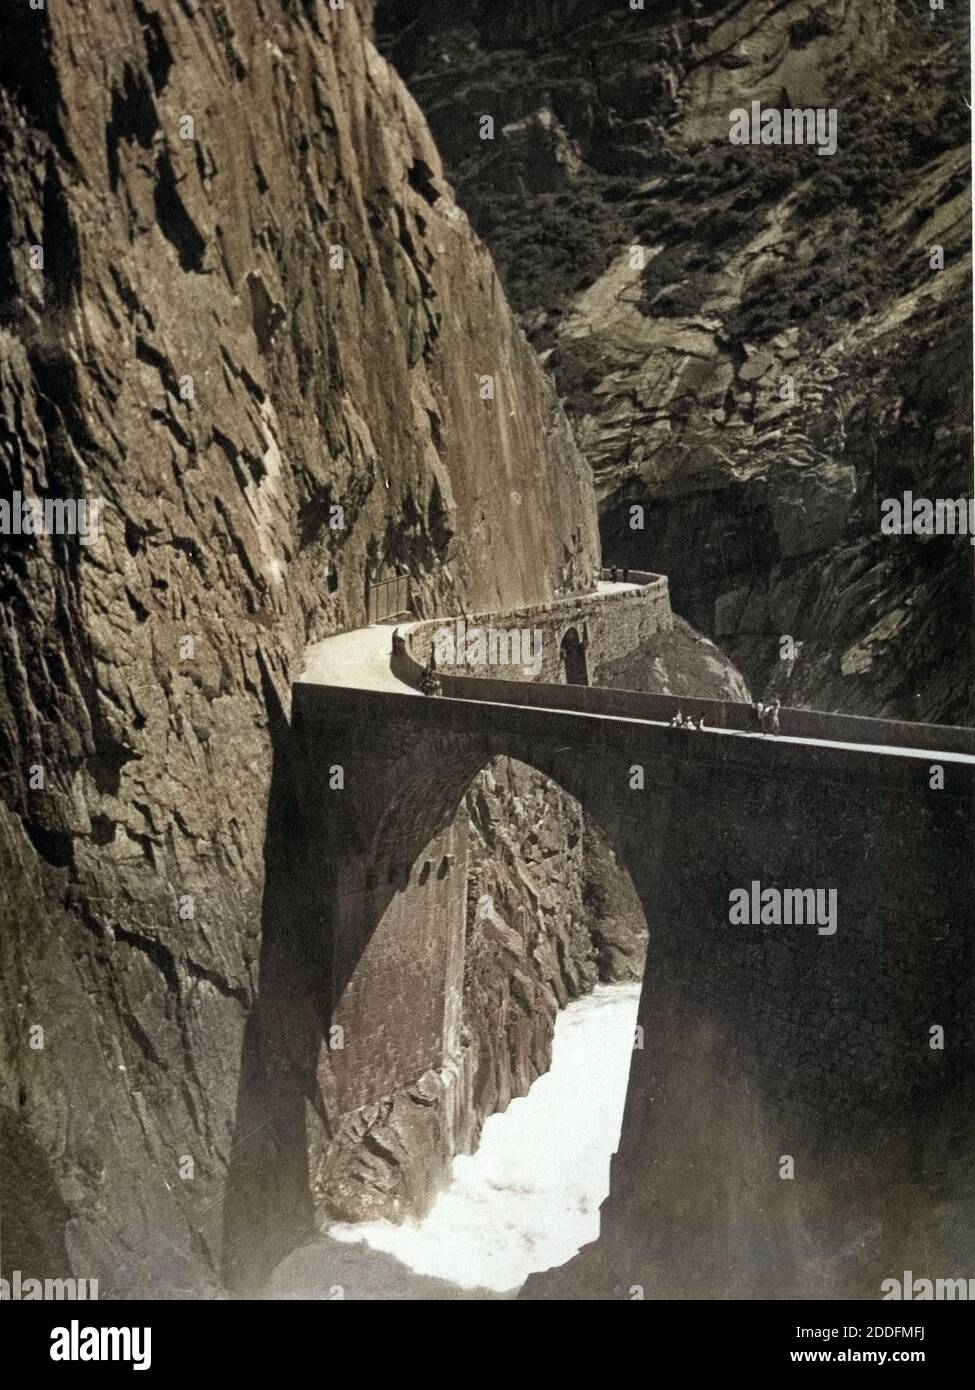 Die Teufelsbrücke in der Schöllenenschlucht im Kanton Uri, Schweiz 1930er Jahre. Teufelsbruecke bridge at Schoellenen canyon in Uri canton, Switzerland 1930s. Stock Photo